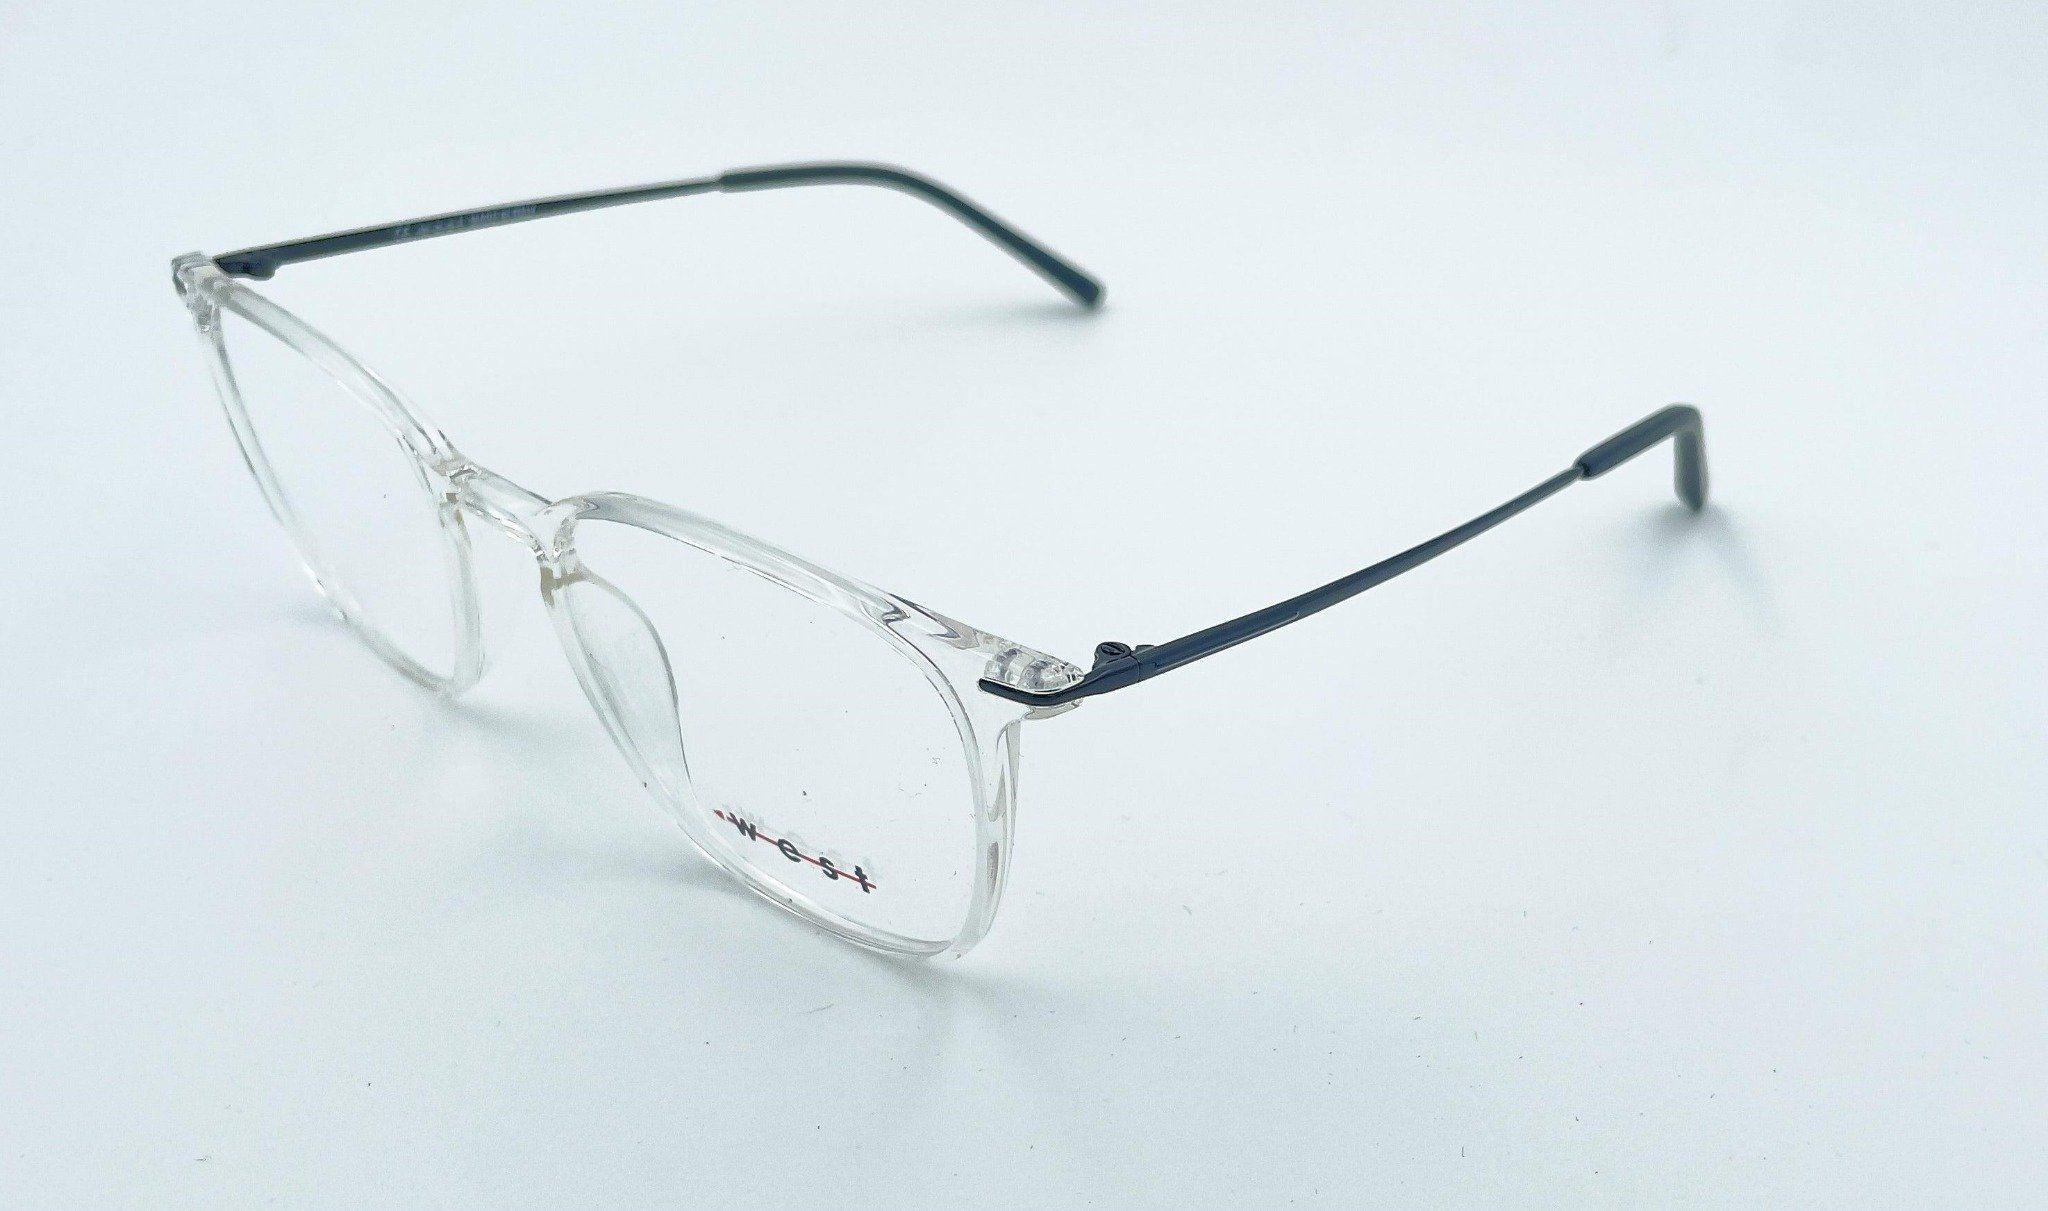  West WV090 C2 eyeglasses 